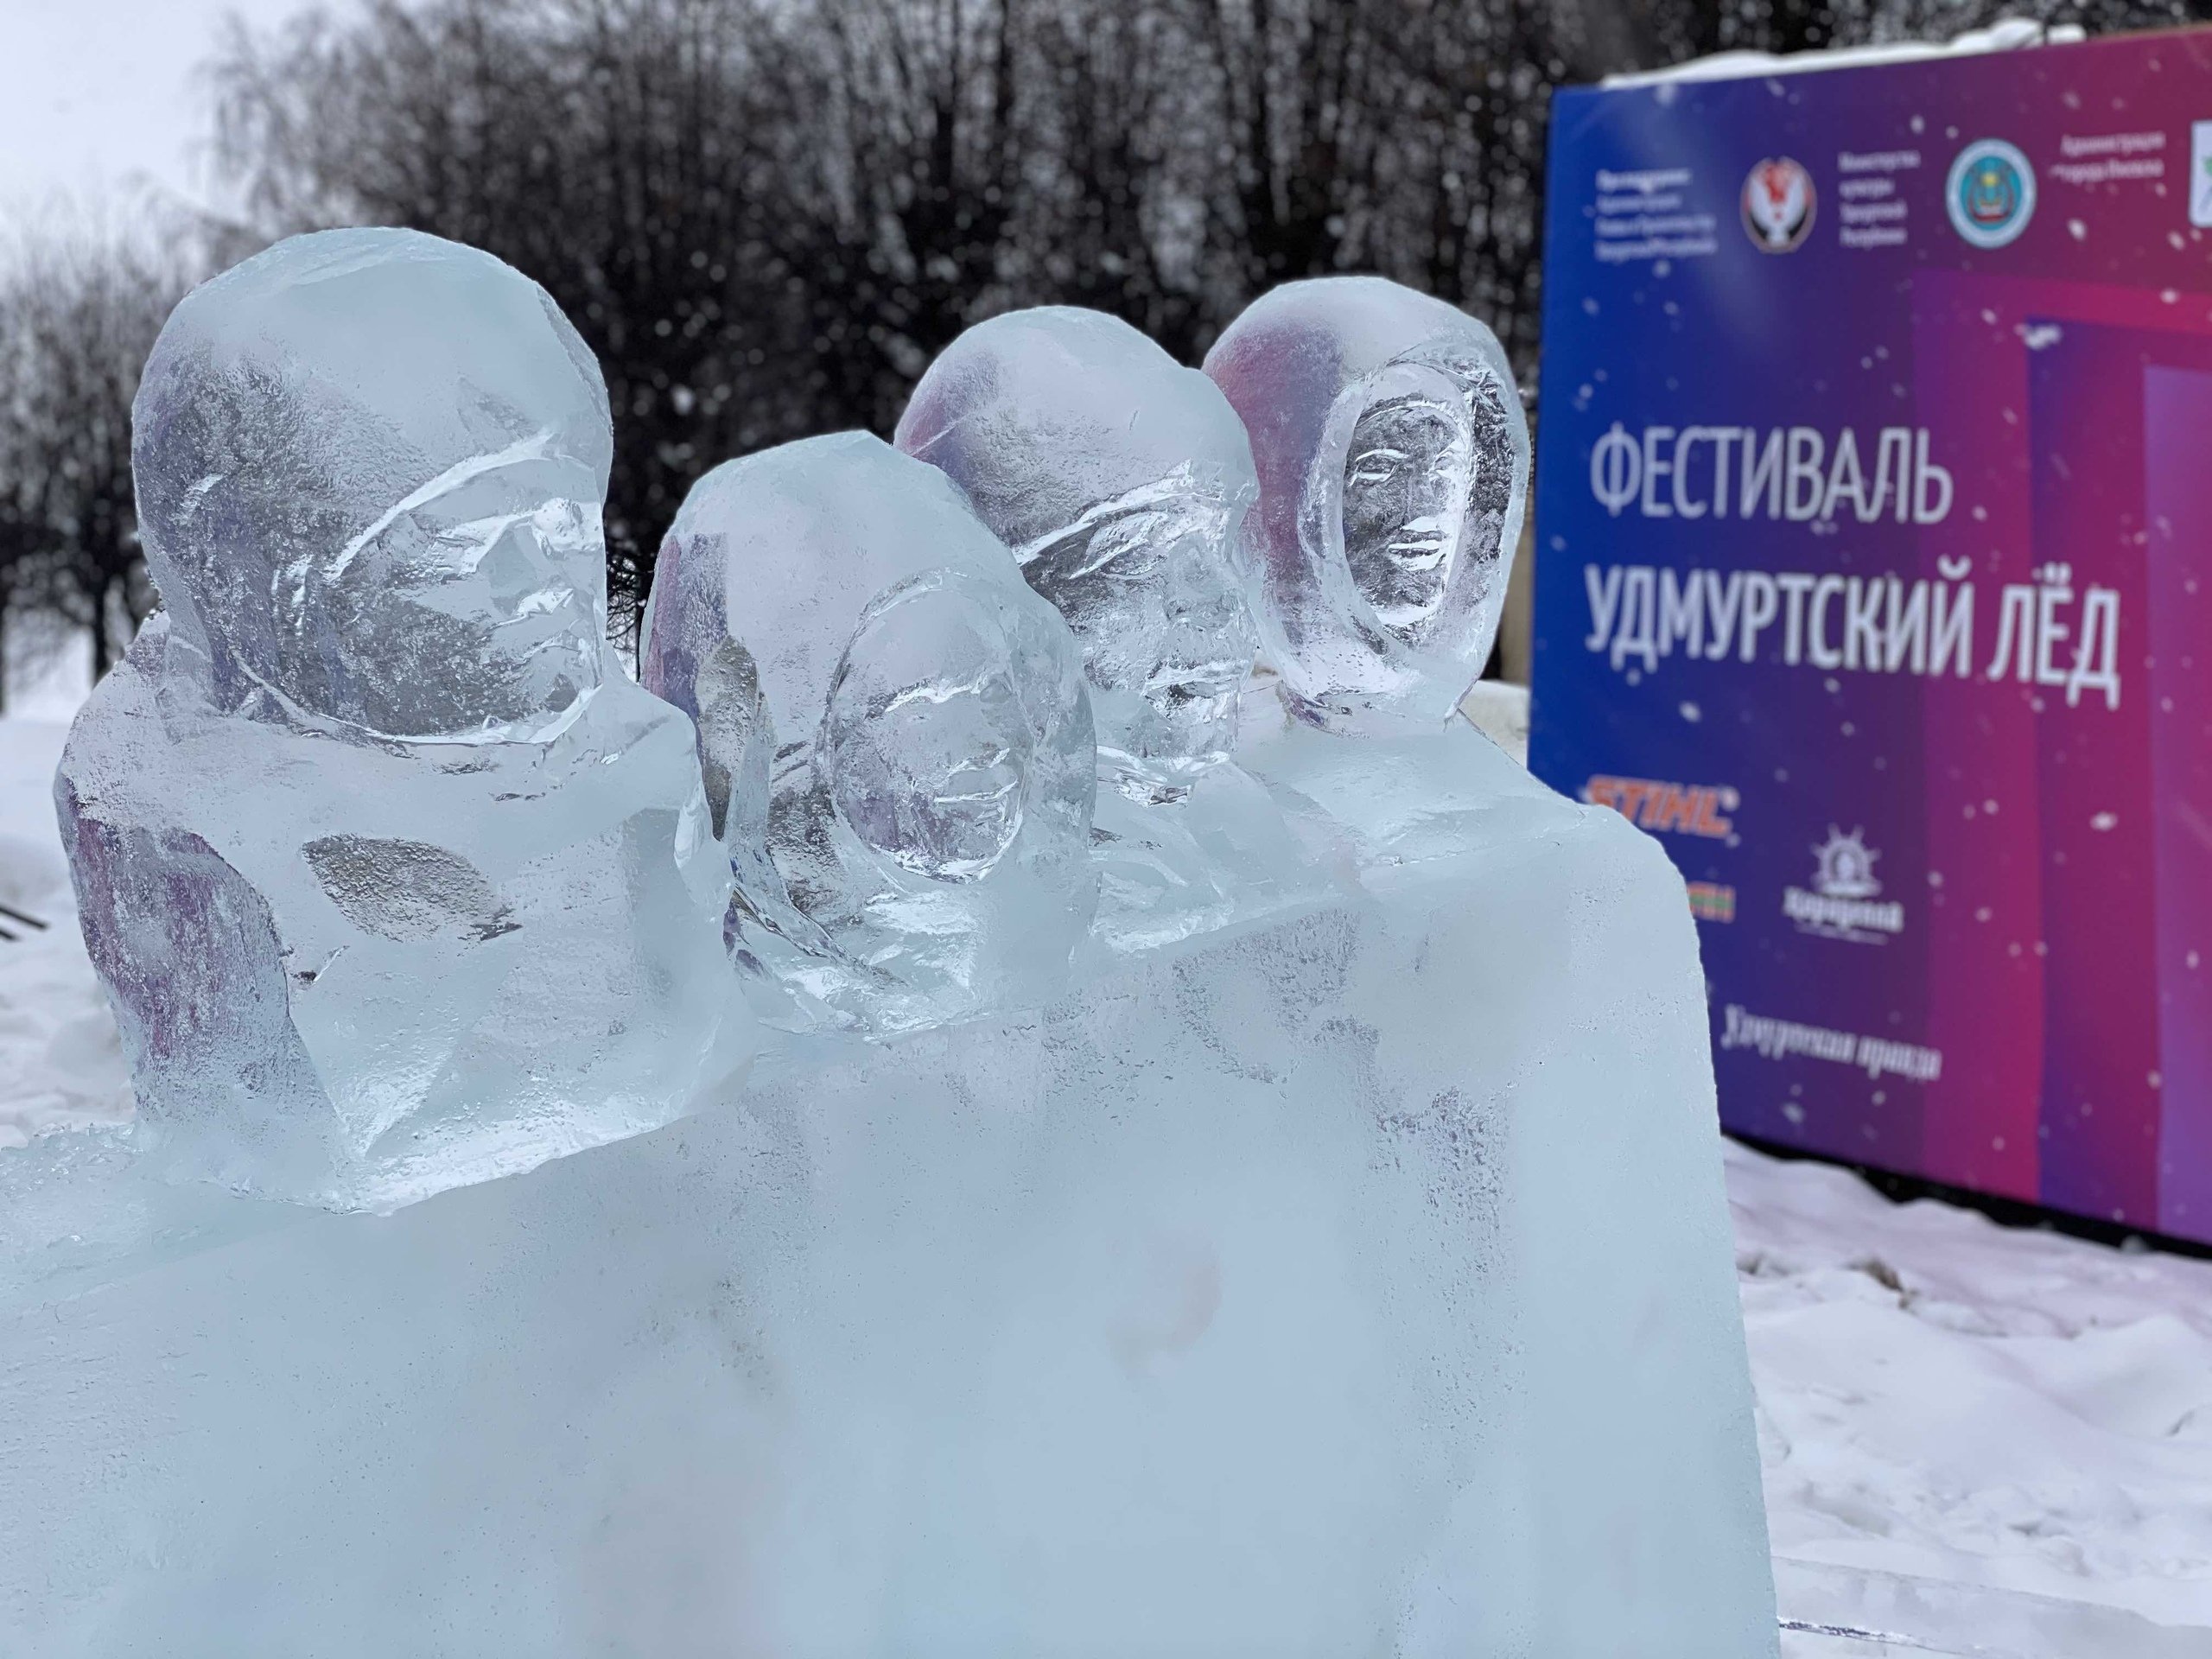 

Скульпторы фестиваля «Удмуртский лед» рассказали о своих композициях

